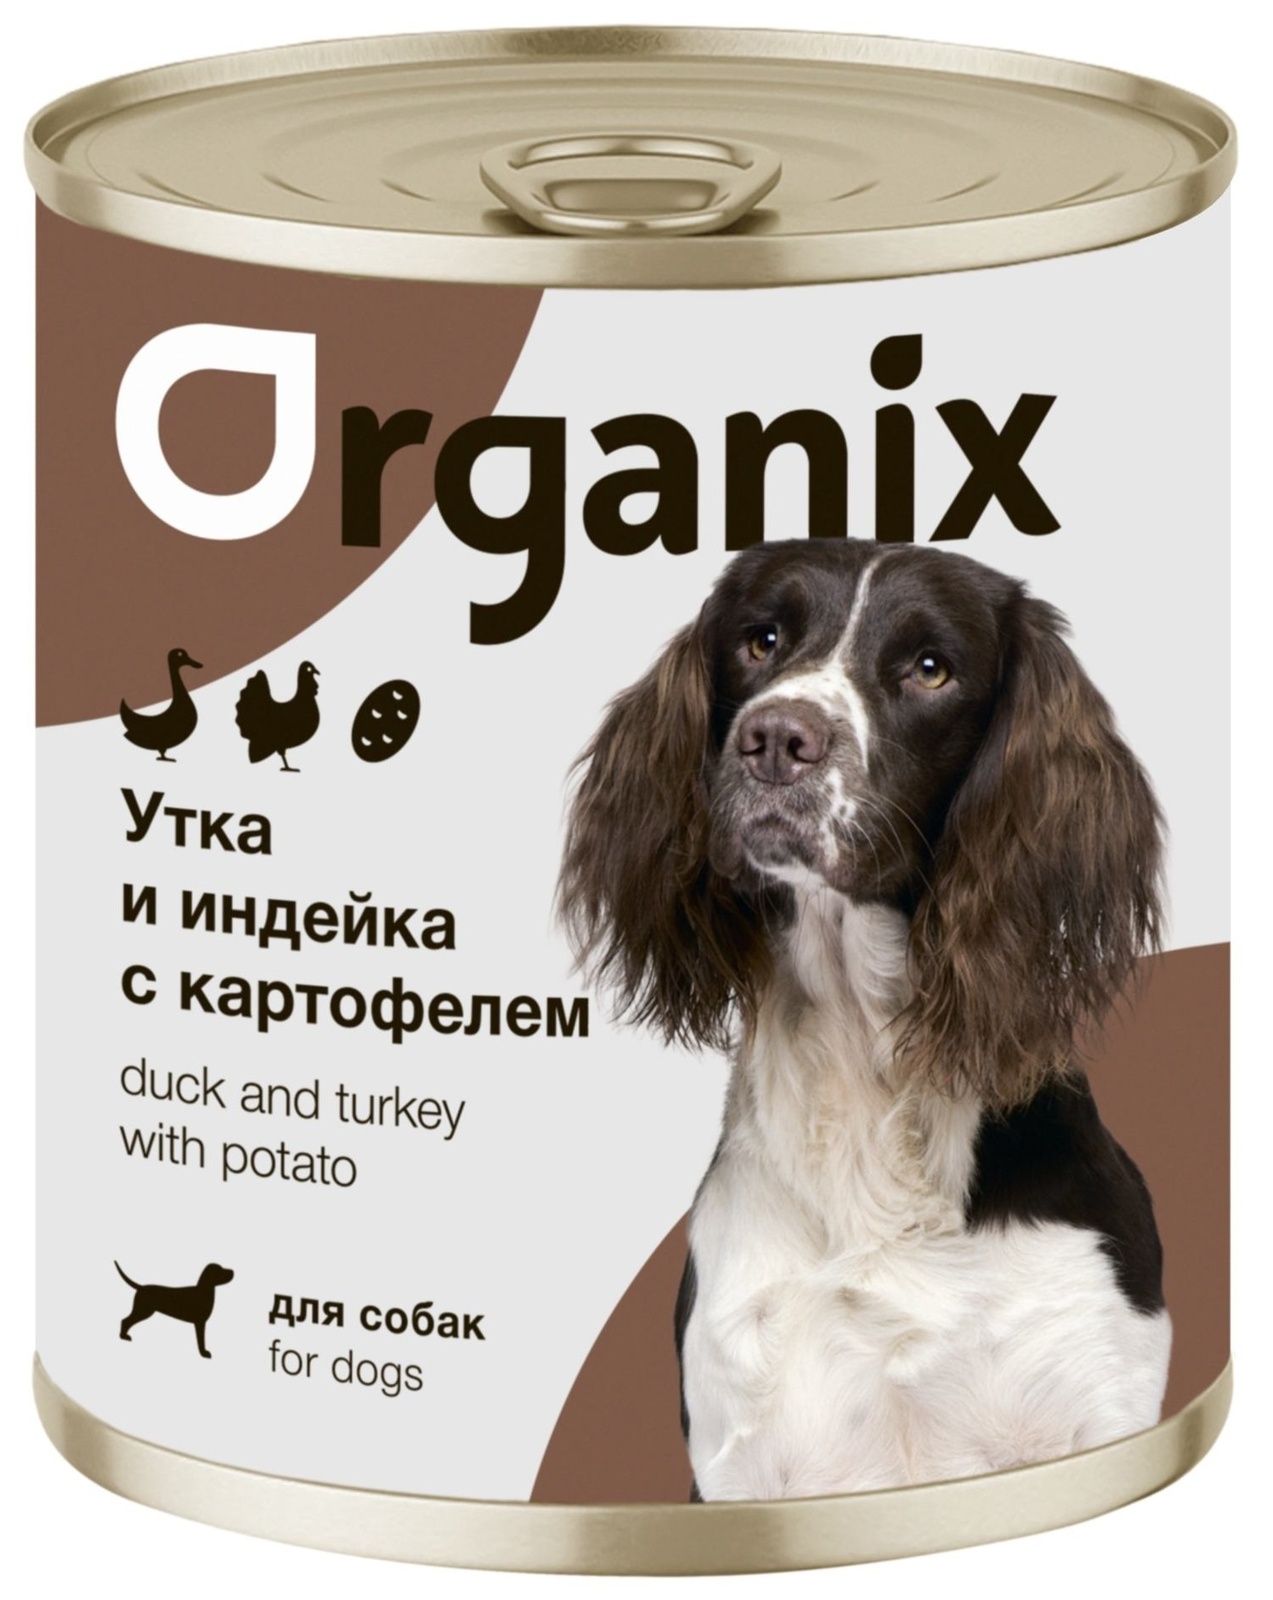 Organix консервы Organix консервы для собак Утка, индейка, картофель (100 г) organix консервы organix консервы для собак утка индейка картофель 100 г